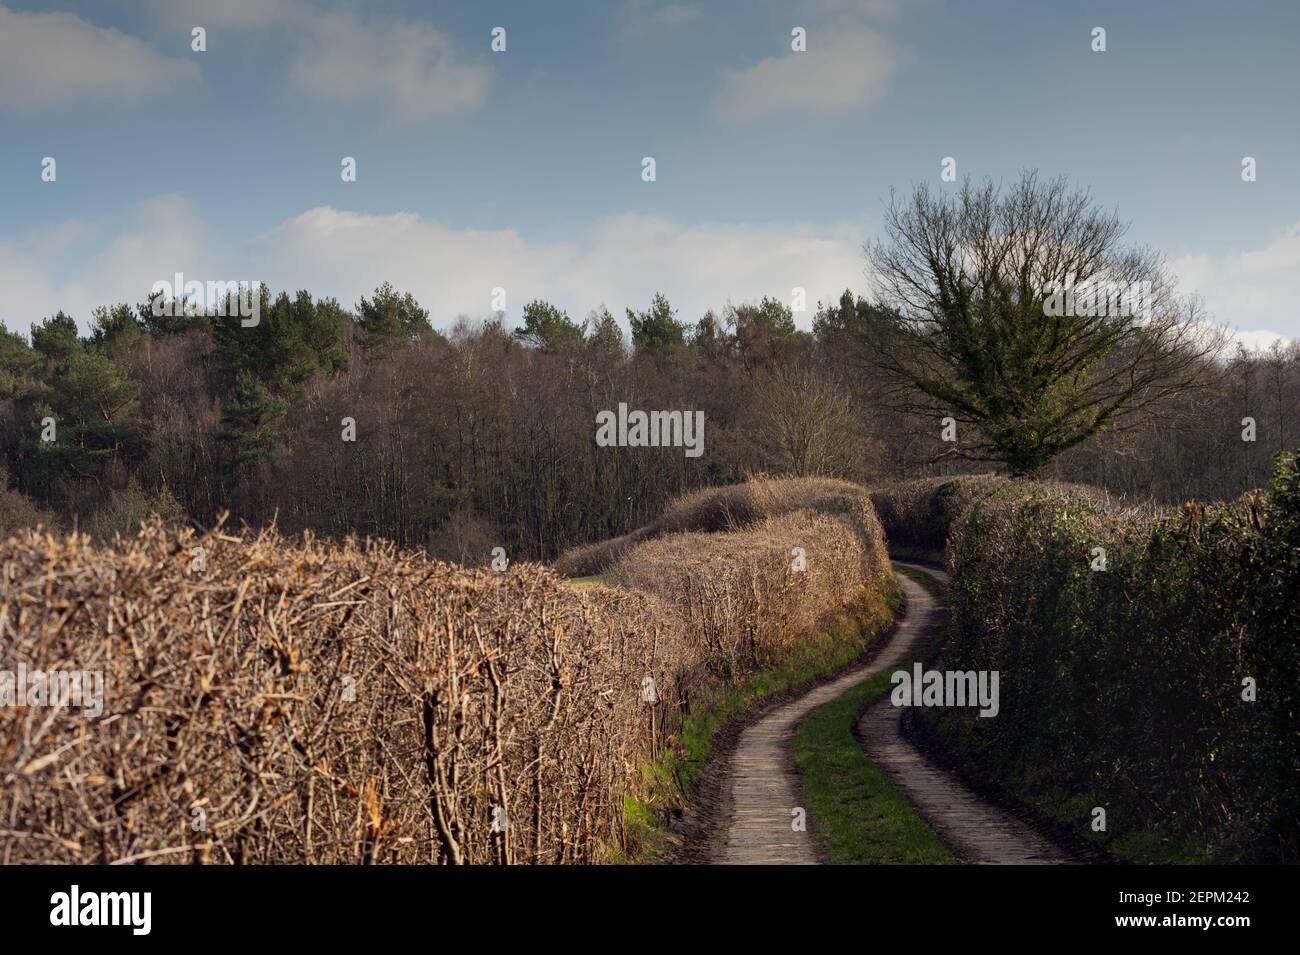 Farm track between hedges in rural Wealden, England Stock Photo